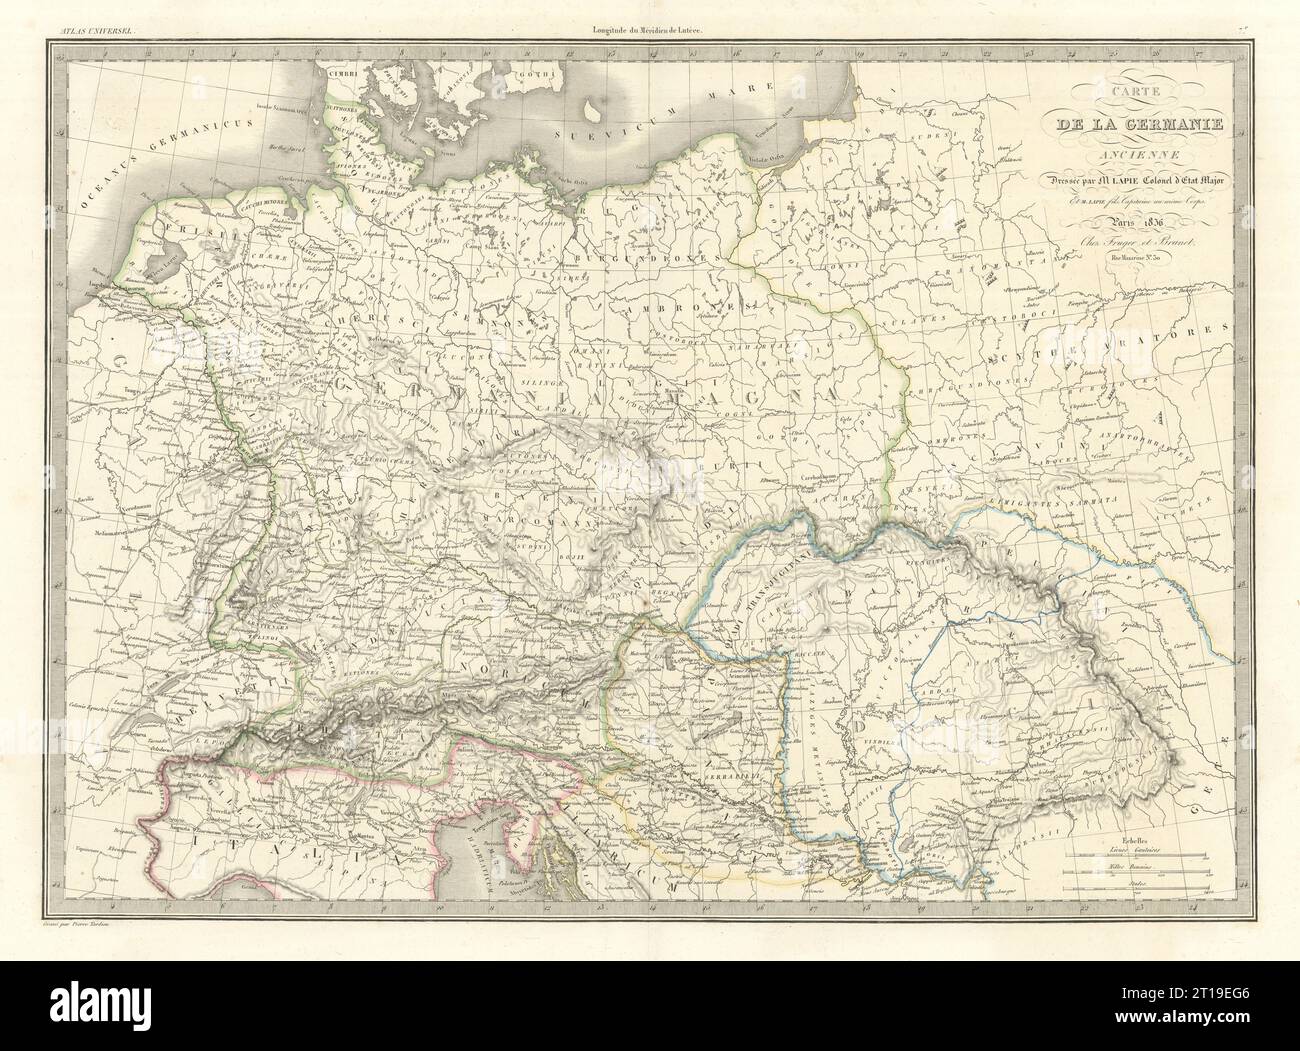 Carte de la Germanie ancienne. Ancient Germany. LAPIE 1836 old antique map Stock Photo